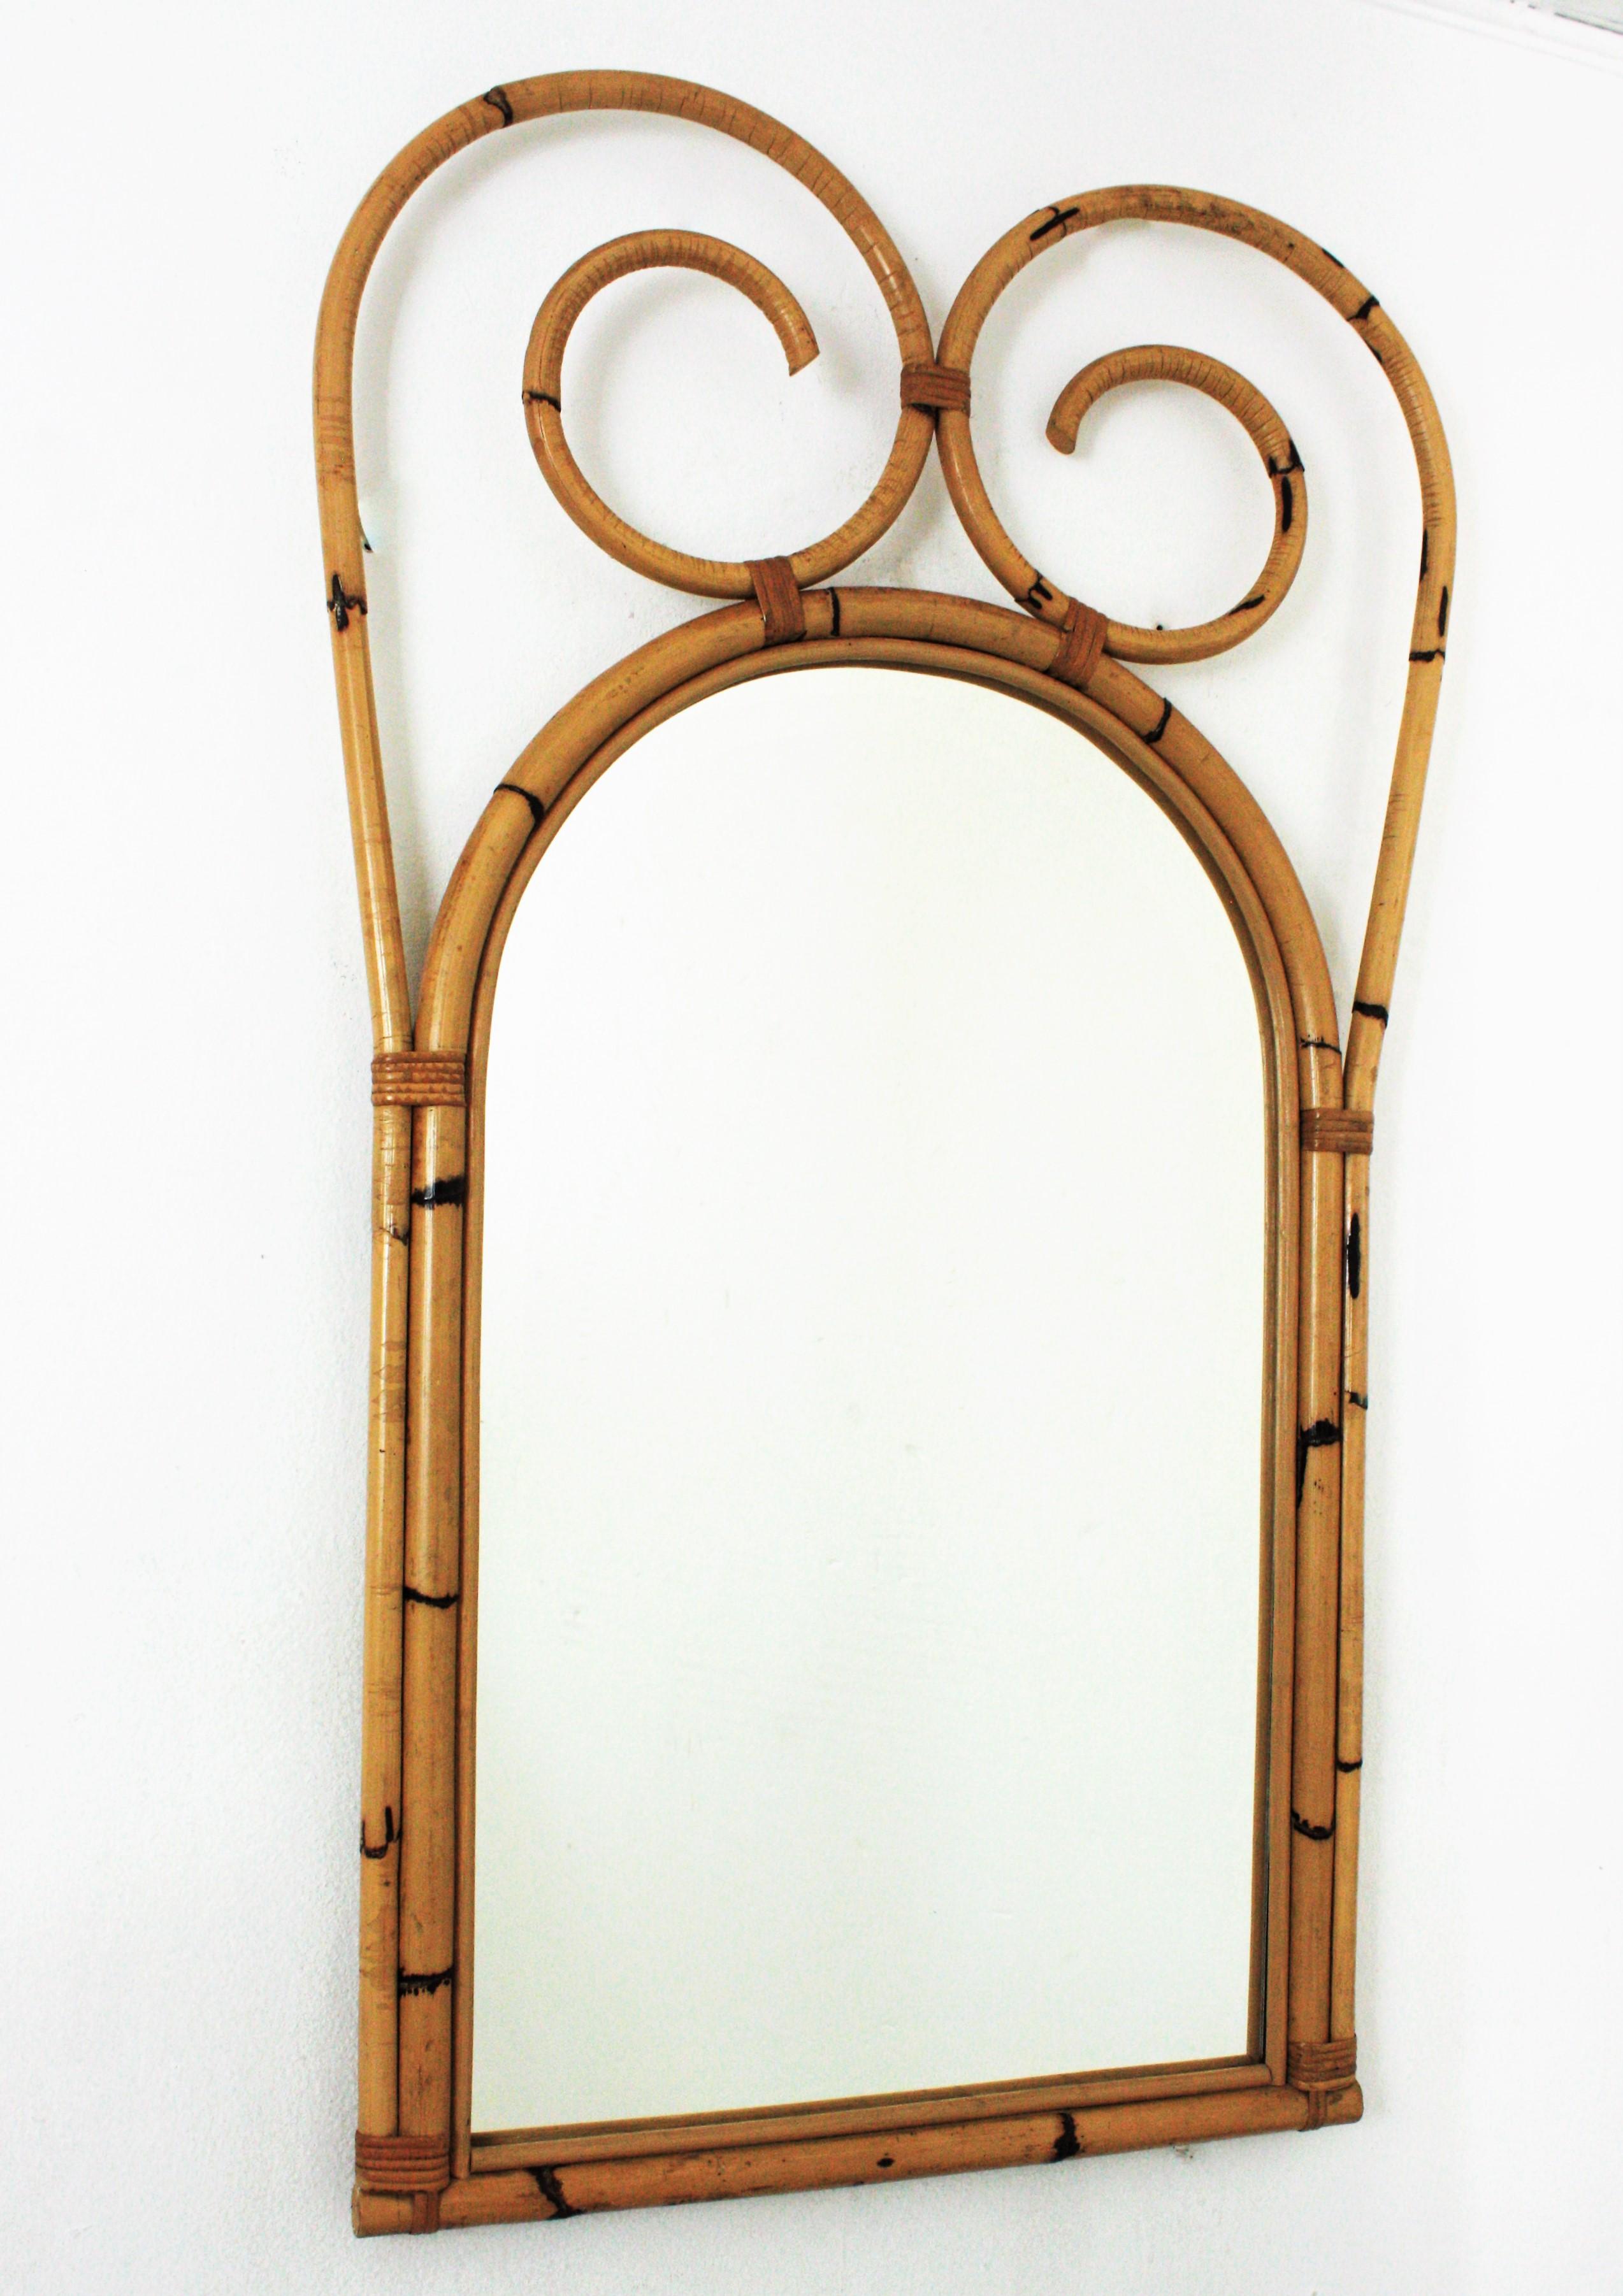 Hervorragender großer Rattan-Bambus-Spiegel aus der Mitte des Jahrhunderts. Italienische Herstellung, 1950er-1960er Jahre
Dieser coole Wandspiegel besteht aus einem gewölbten Bambusspiegel, der mit einem großen, spiralförmigen Wappen aus